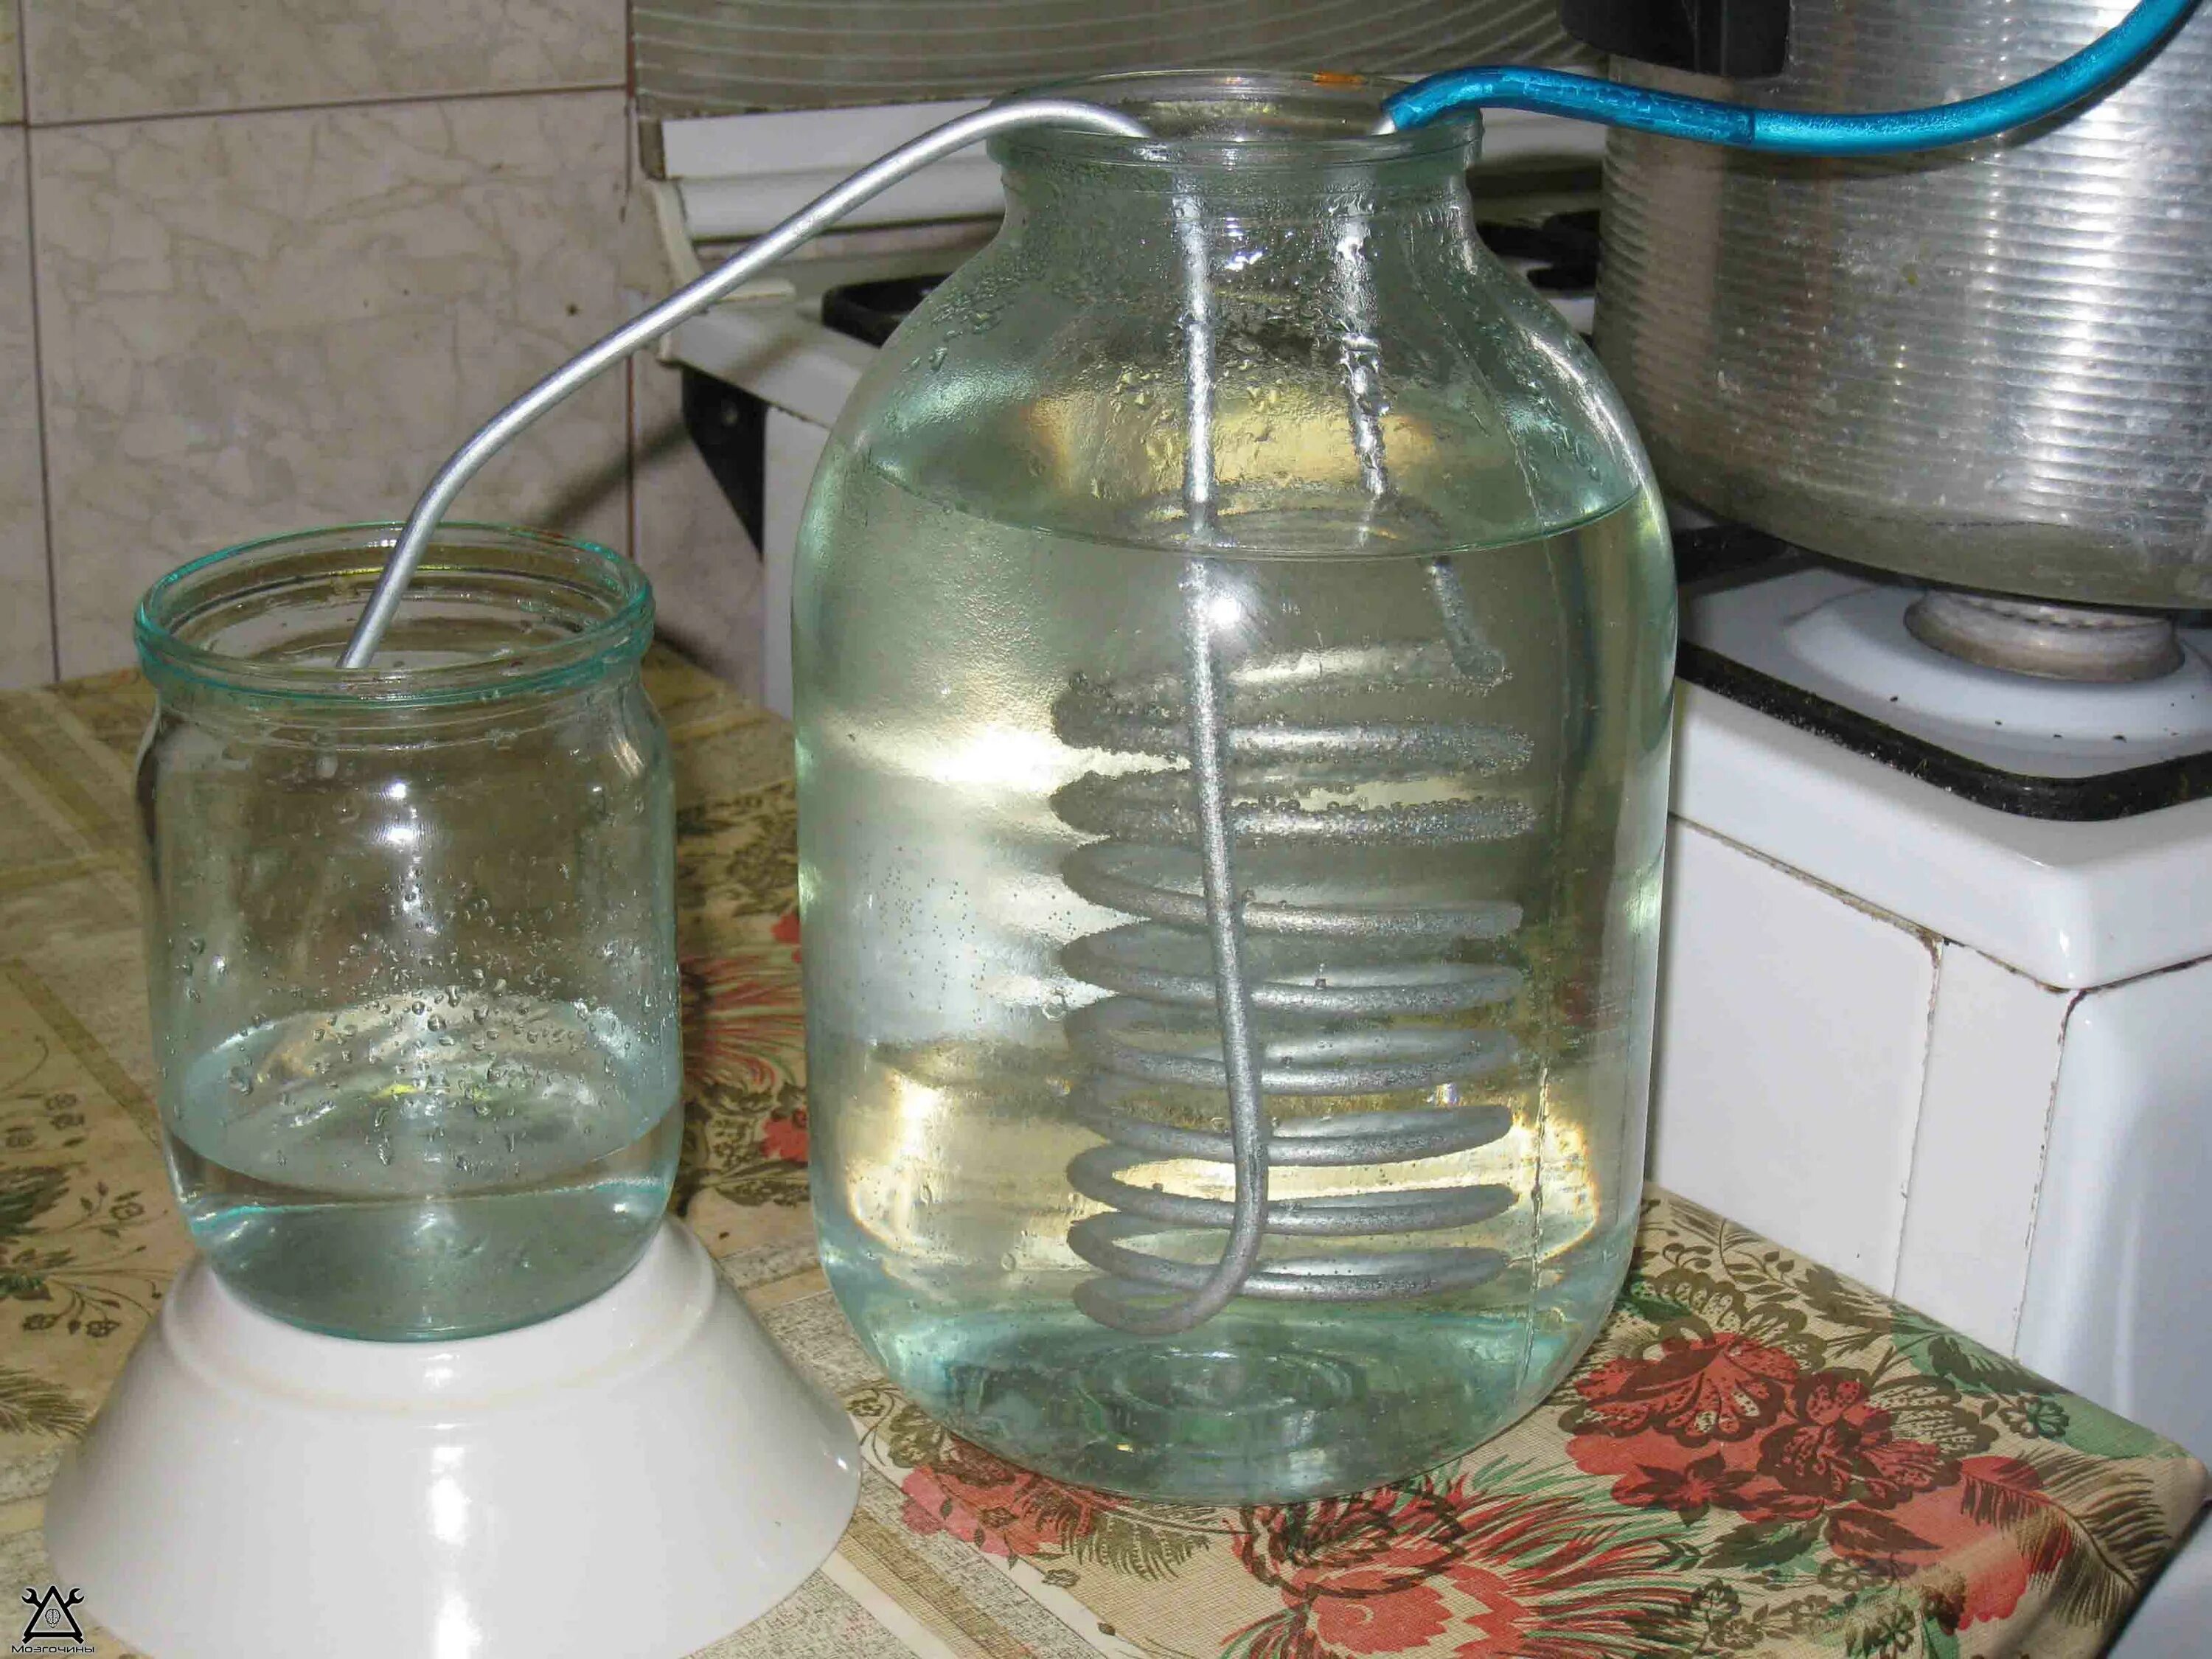 Получить воду очищенную. Дистиллированная вода в домашних условиях. Дистиллятор для дистиллированной воды. Дистилляция в домашних условиях. Перегонка дистиллированной воды.